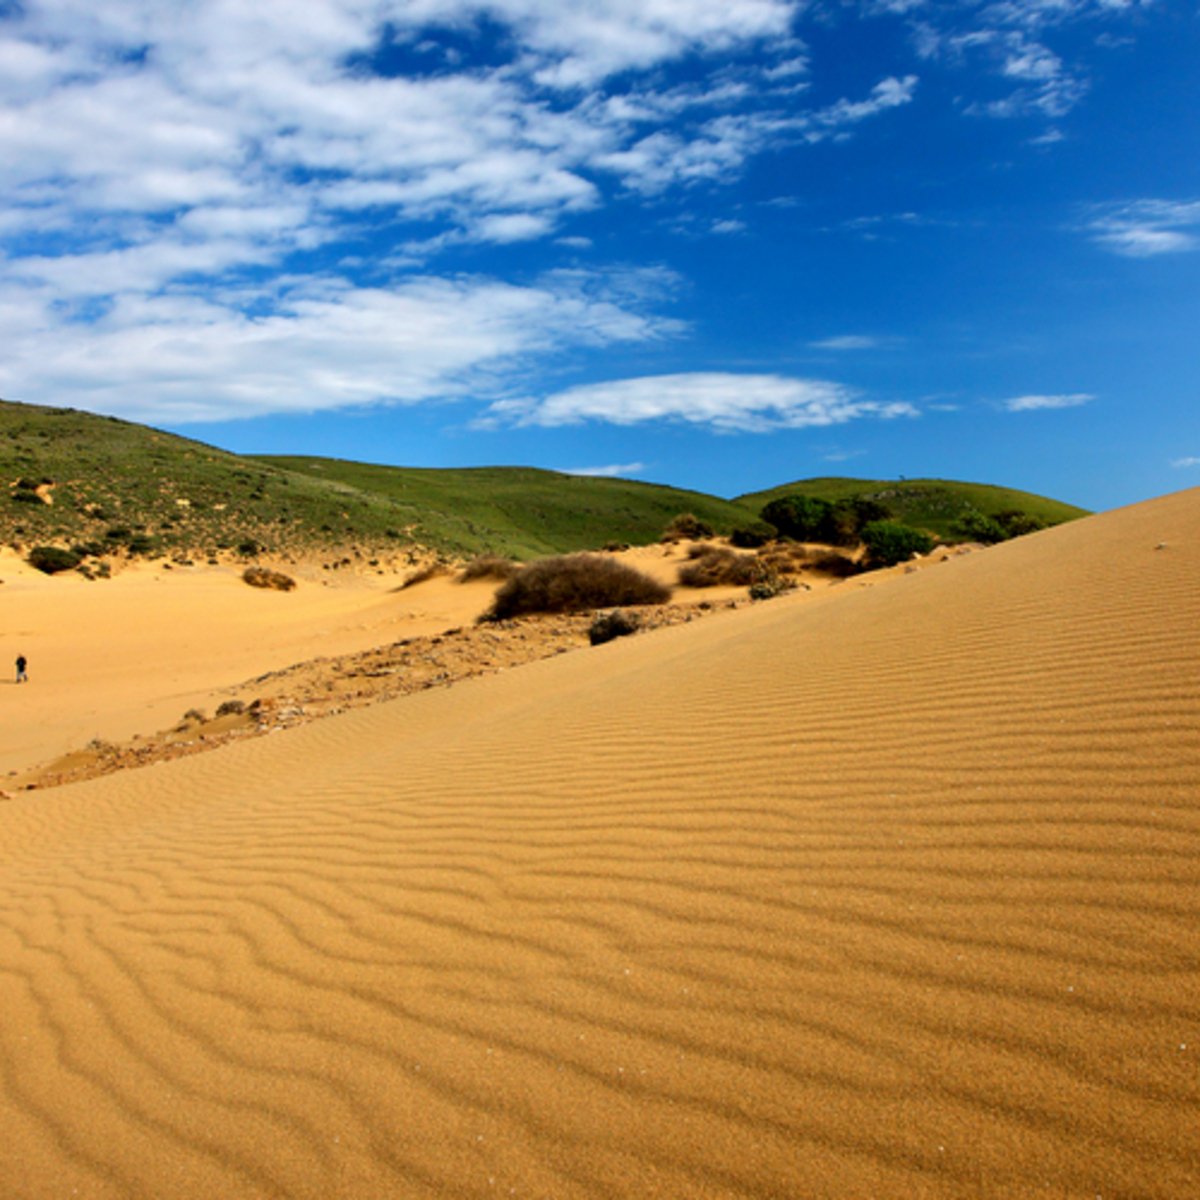 Η «Σαχάρα της Ελλάδας» βρίσκεται στη Λήμνο -Απόκοσμο σκηνικό με χρυσή άμμο [εικόνες] - iefimerida.gr